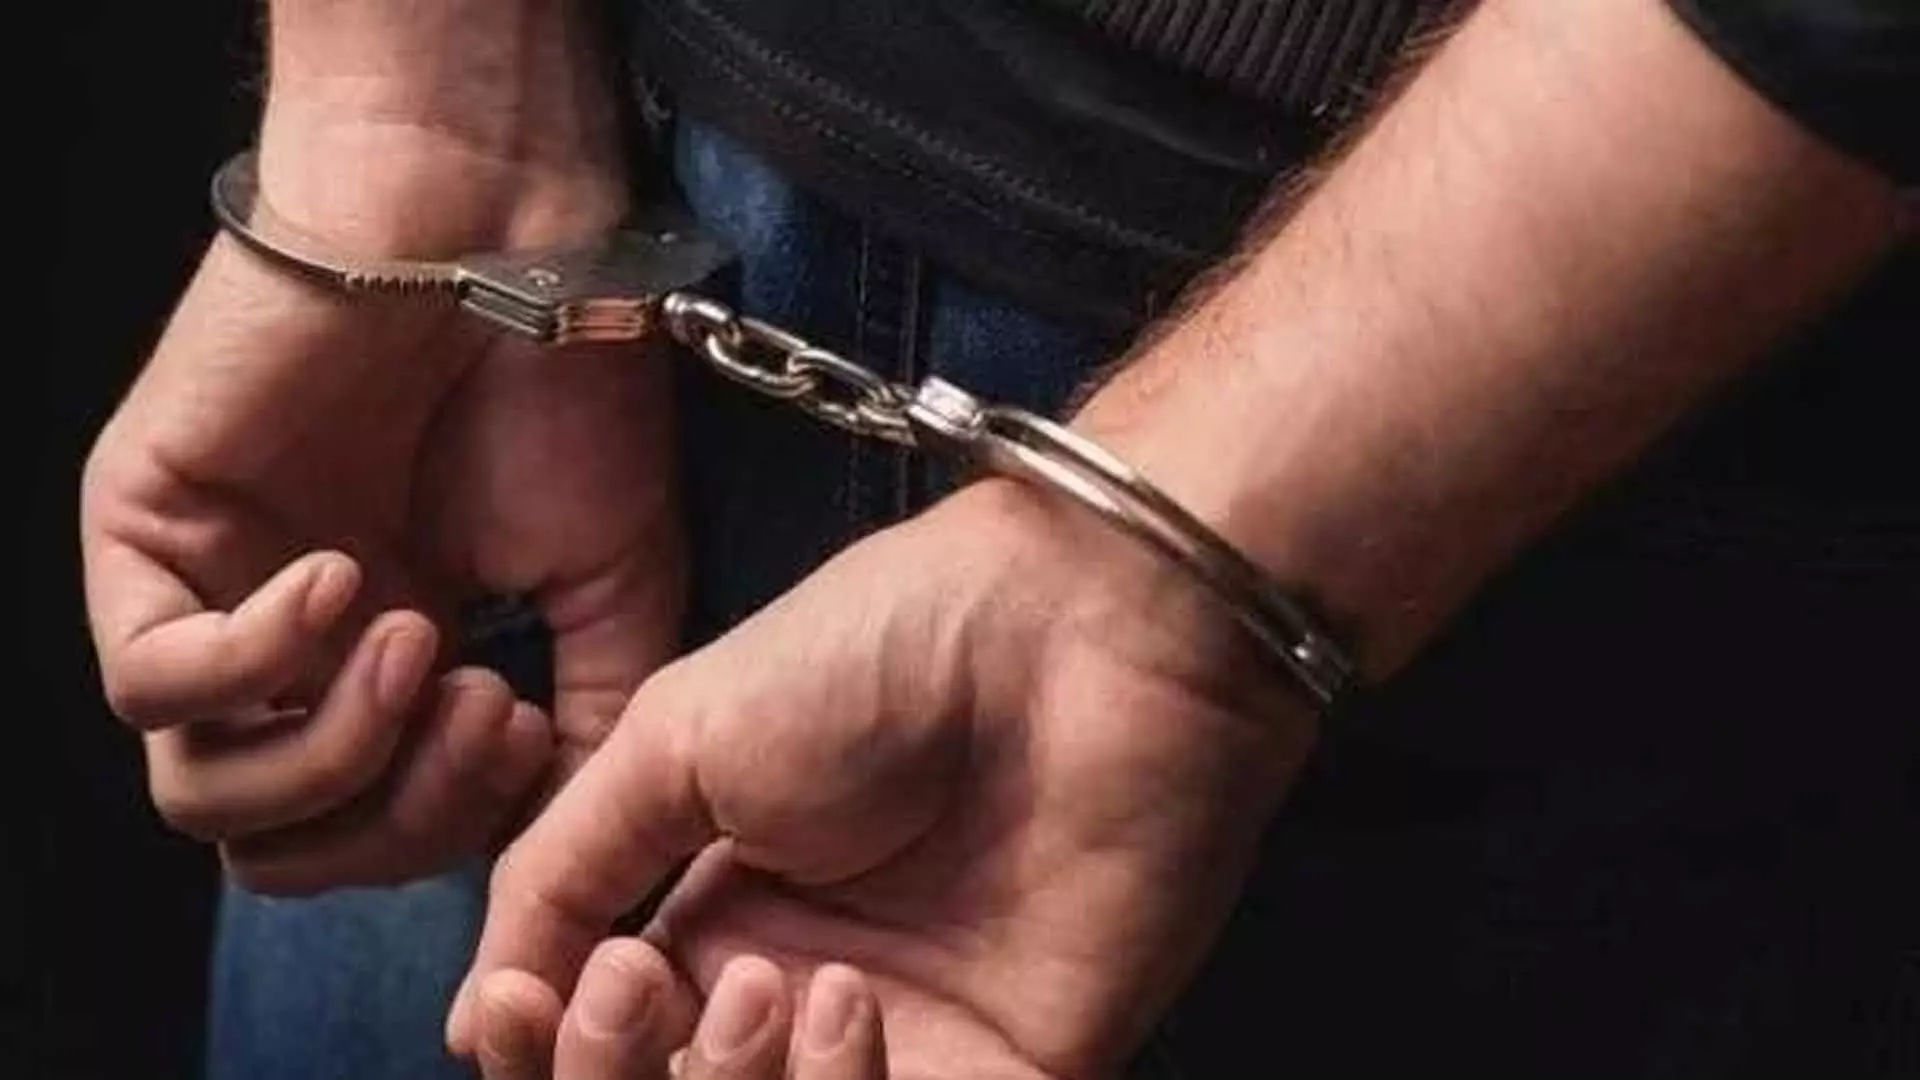 एजेंसी मालिक के अपहरण के आरोप में तीन लोग गिरफ्तार, मास्टरमाइंड फरार